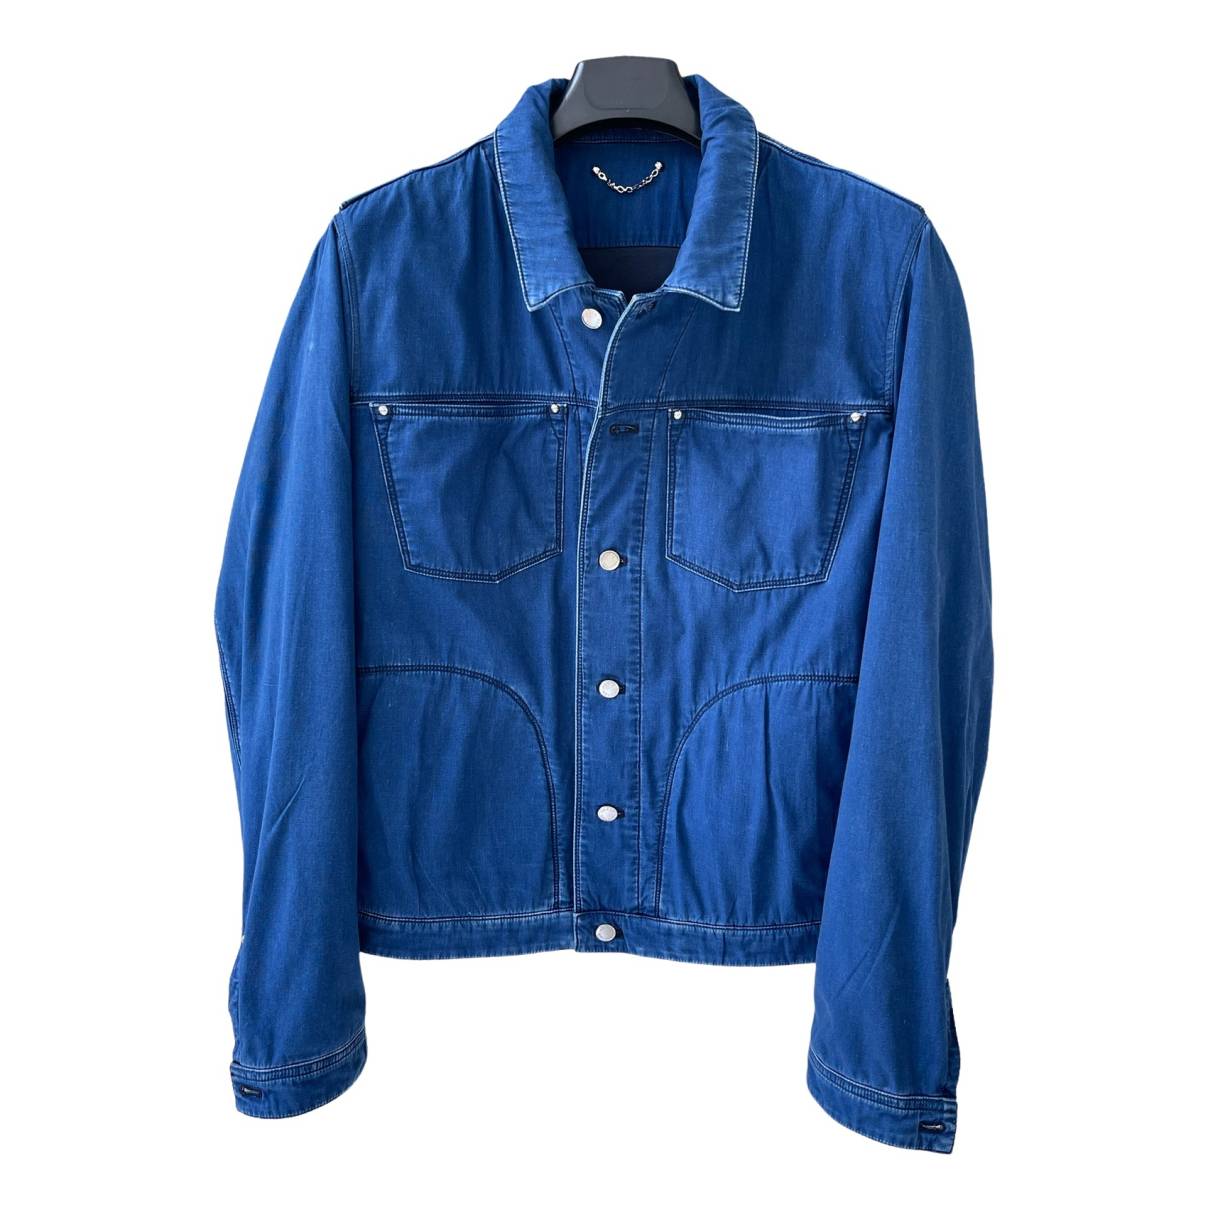 Louis Vuitton - Authenticated Jacket - Denim - Jeans Blue Plain For Man, Very Good condition